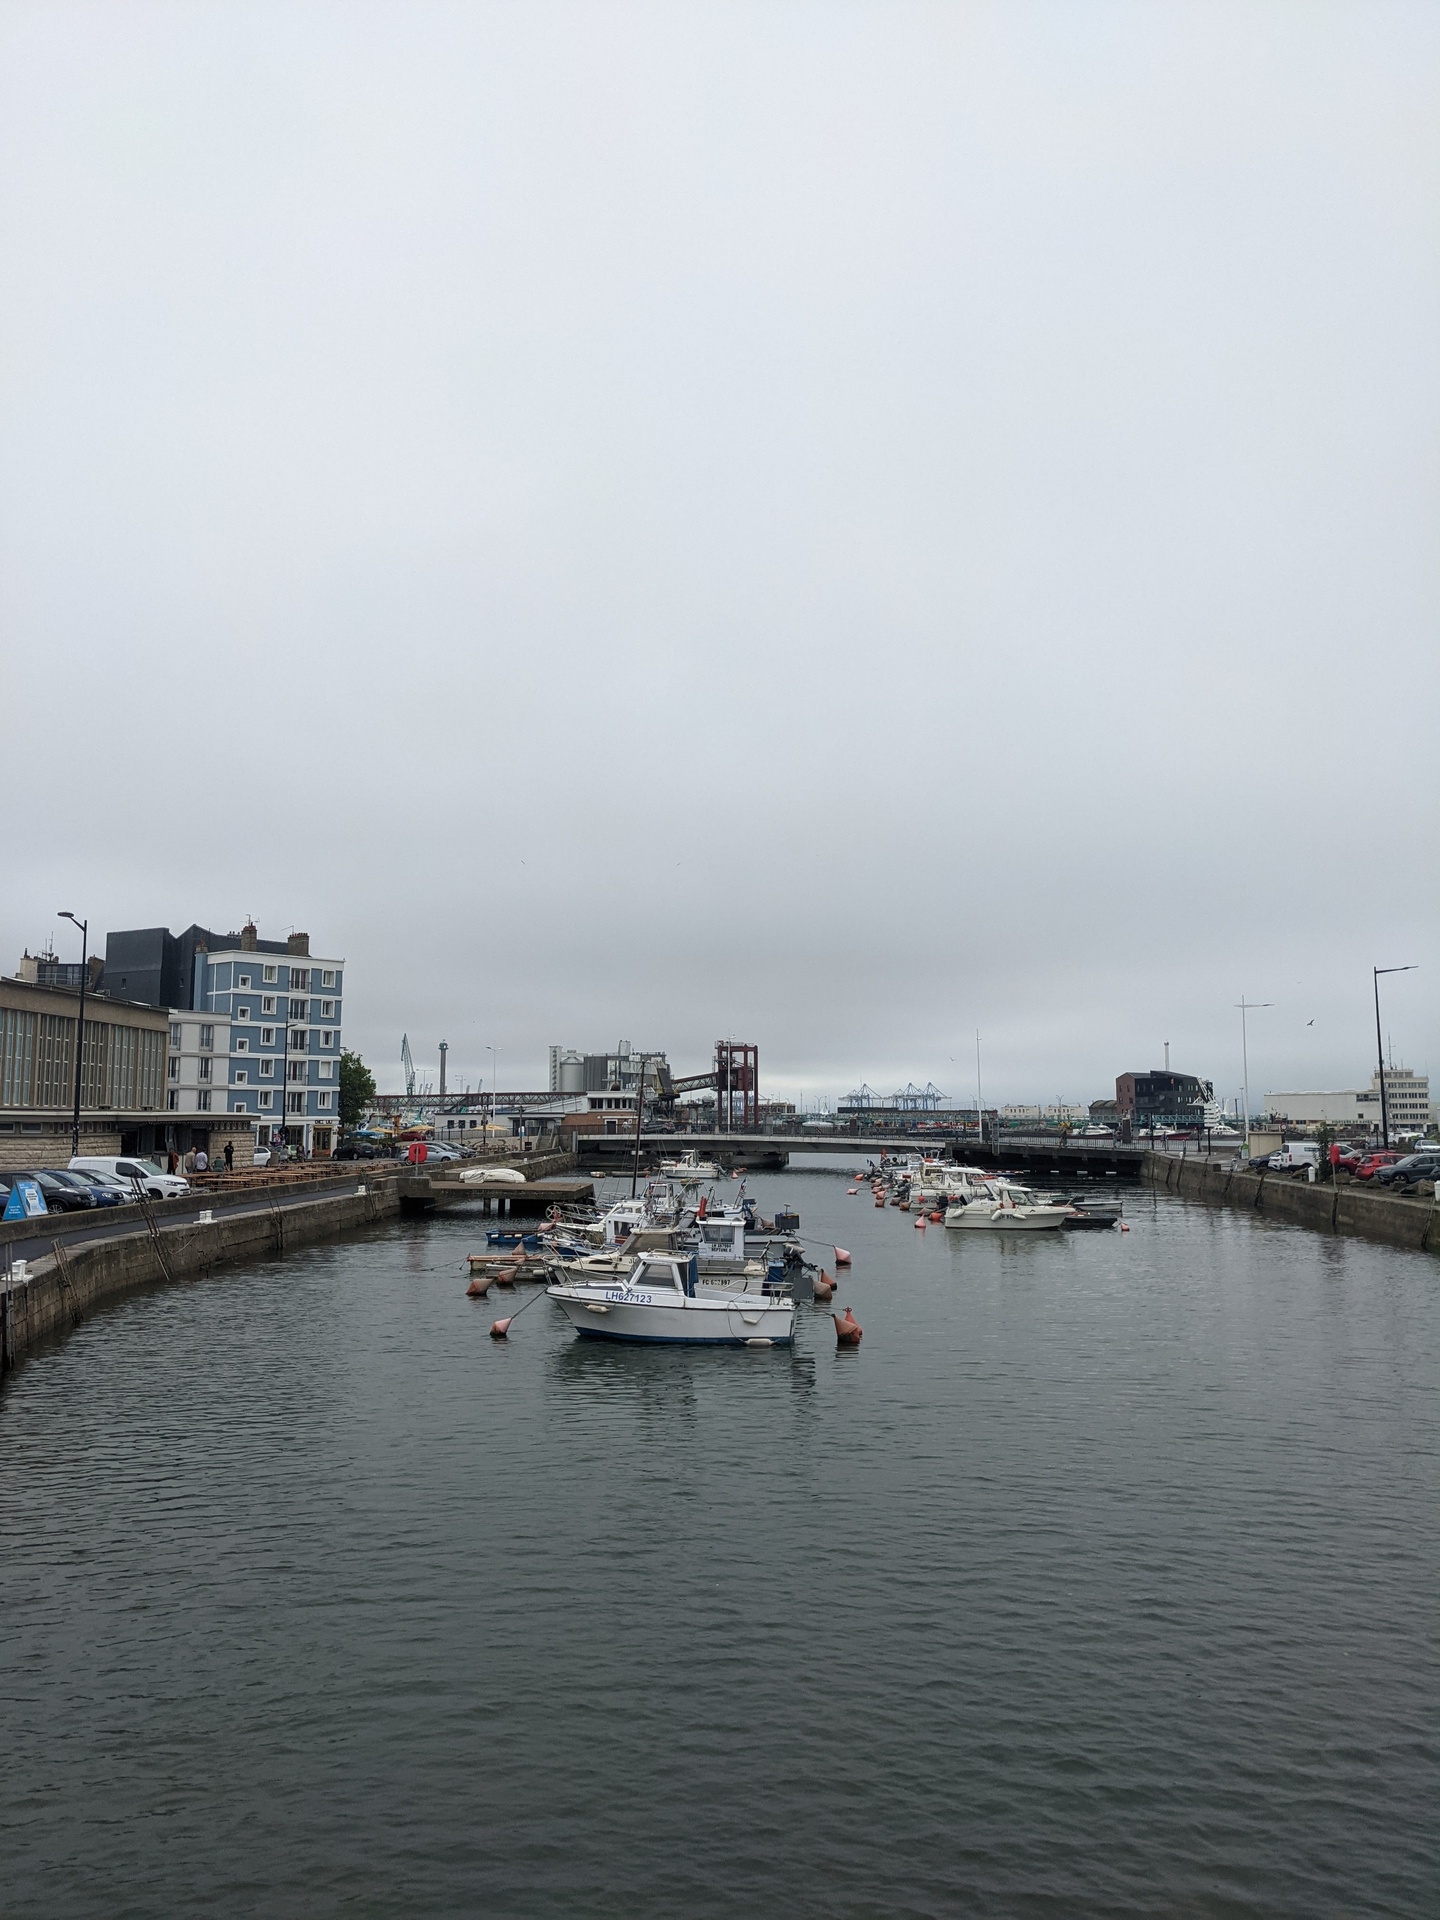 Vue sur un bassin du port du Havre a maree haute. Ciel gris et de batiments en beton autours.